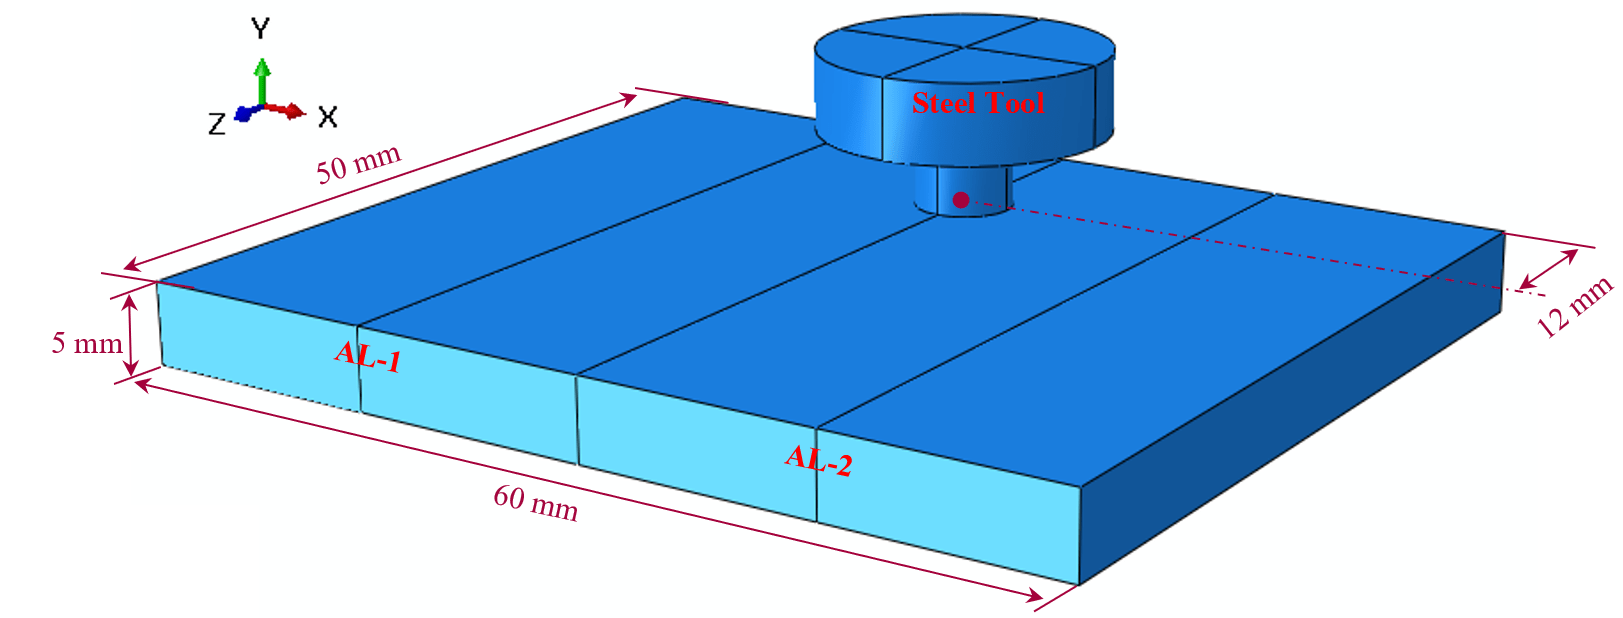 Geometry of the FSW model example-2